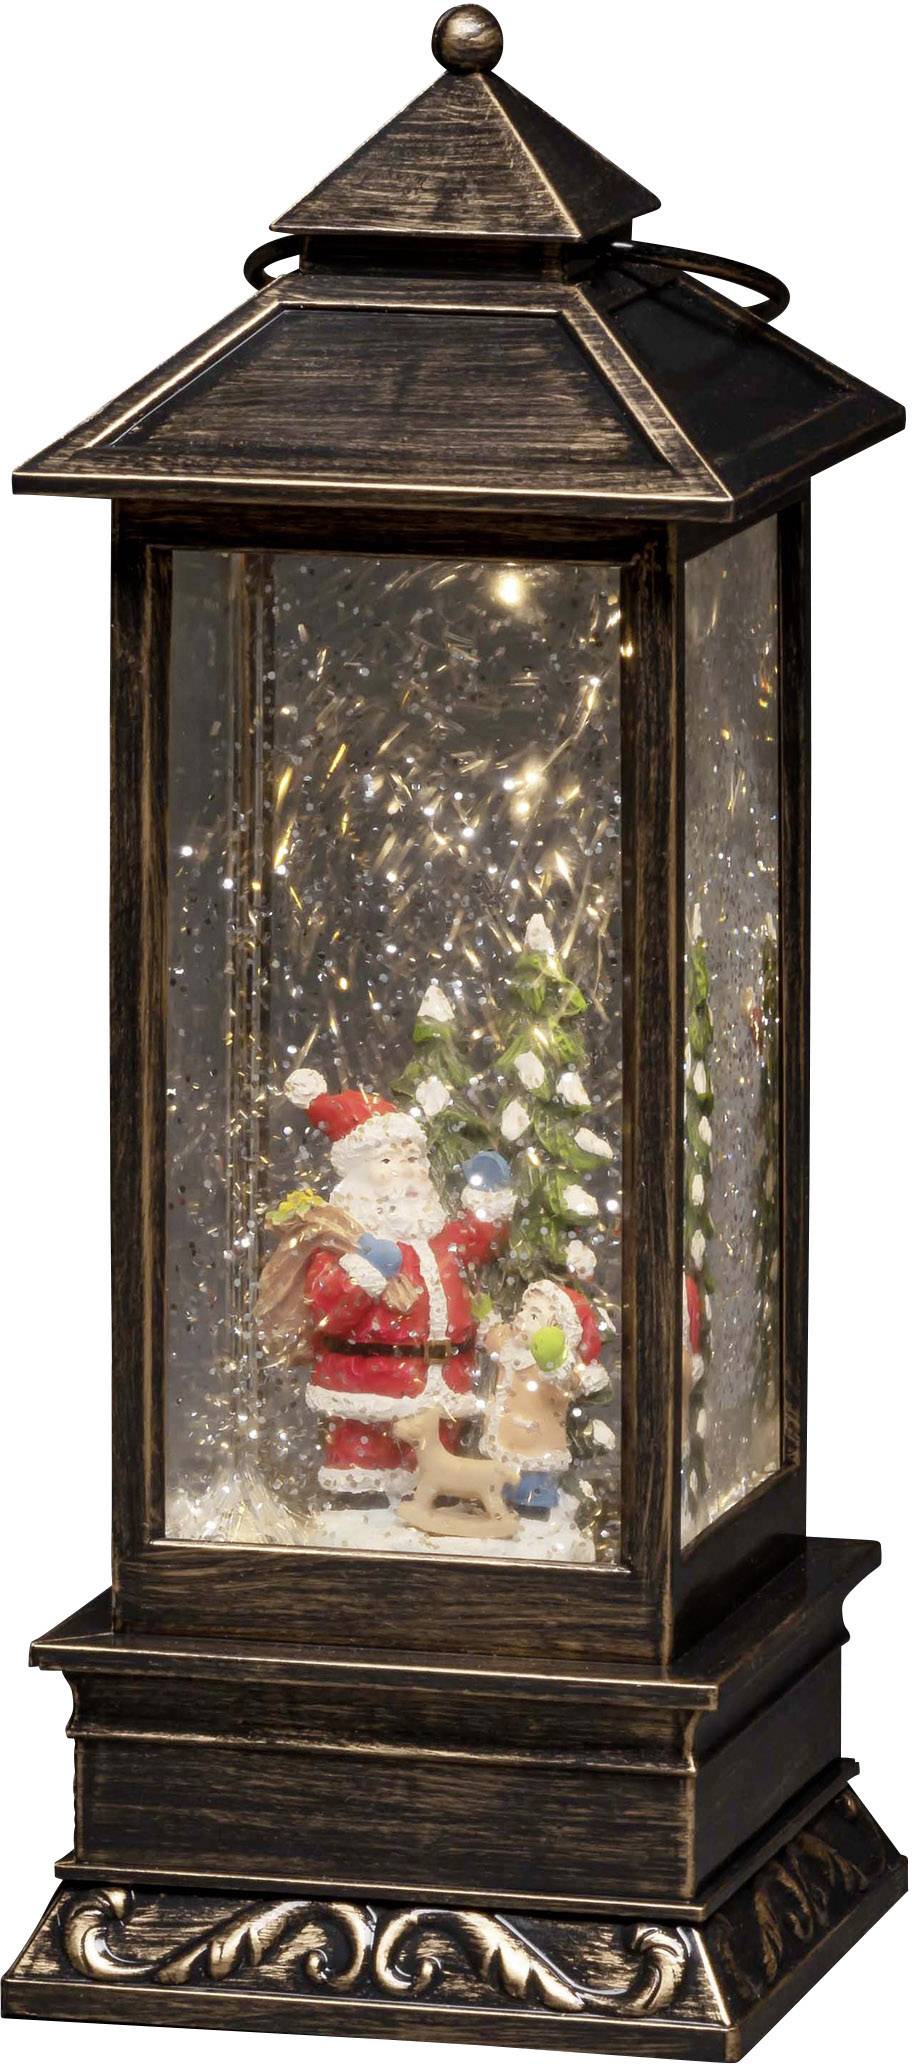 mit Konstsmide beschneit, Timer, LED-Laterne Kind kaufen LED Sc Weihnachtsmann mit 4370-000 Wasser Braun gefüllt, mit Warmweiß